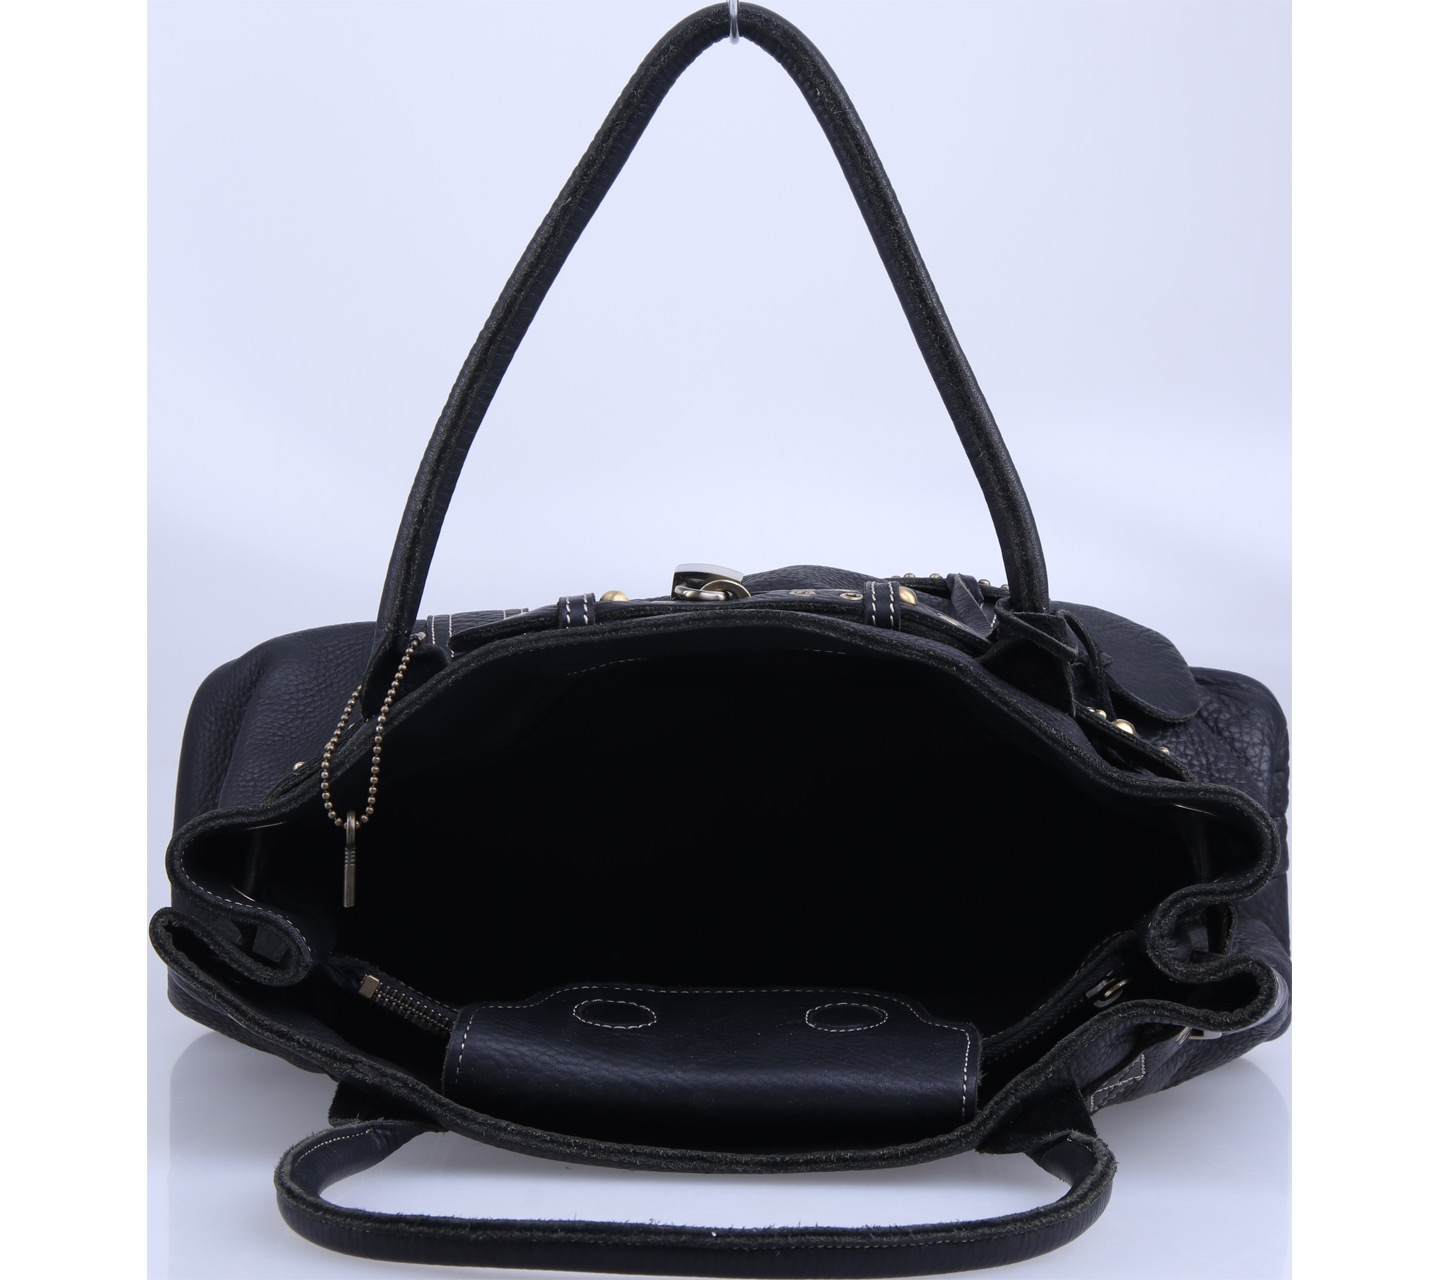 Danier Black Handbag